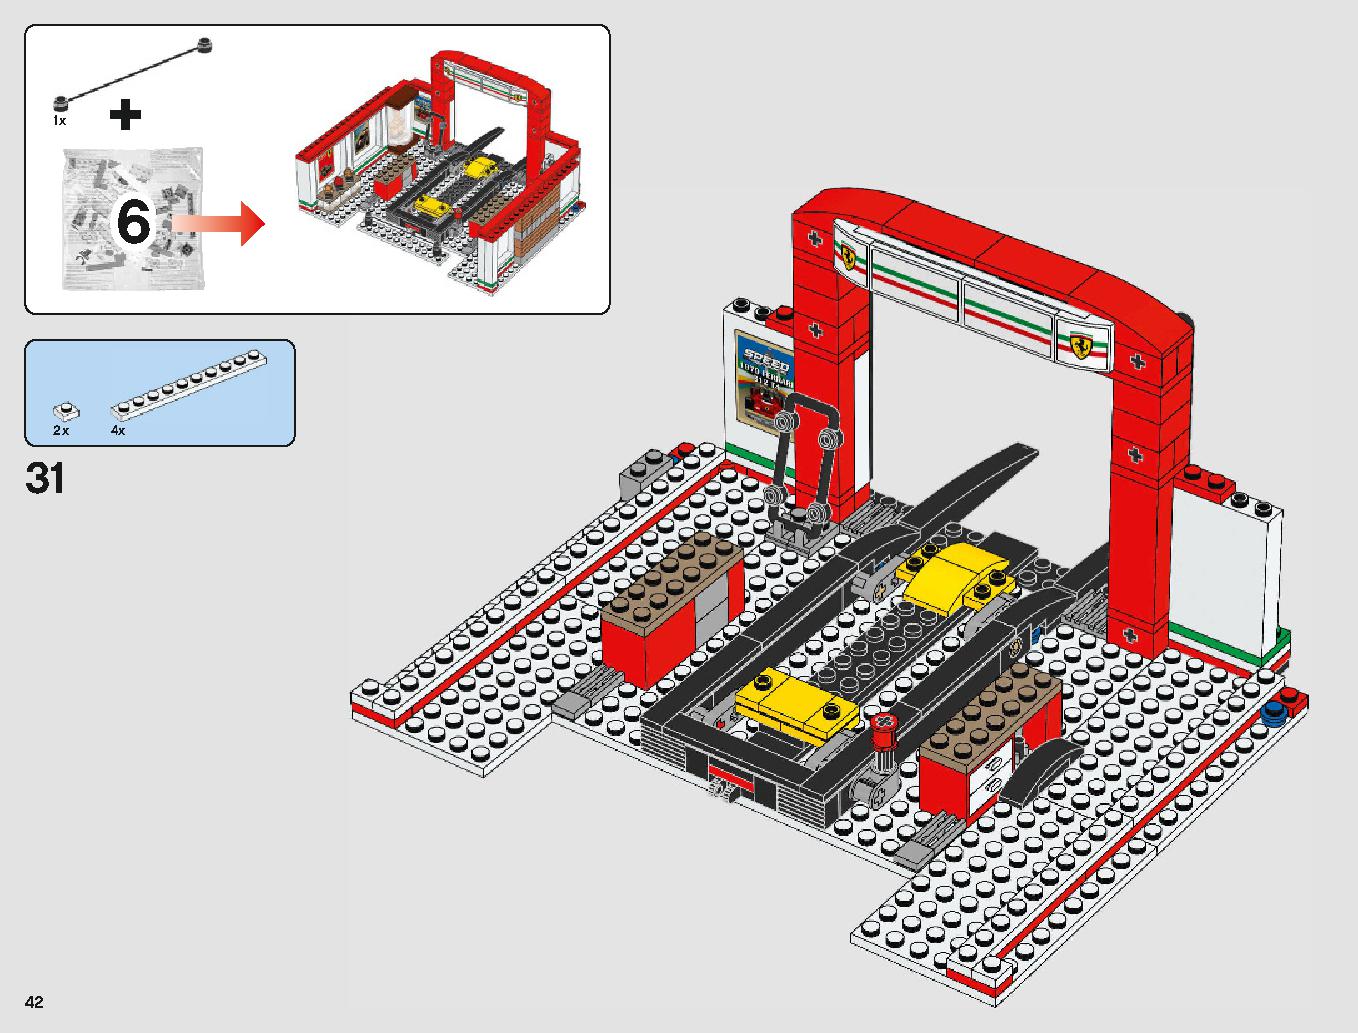 フェラーリ・アルティメット・ガレージ 75889 レゴの商品情報 レゴの説明書・組立方法 42 page